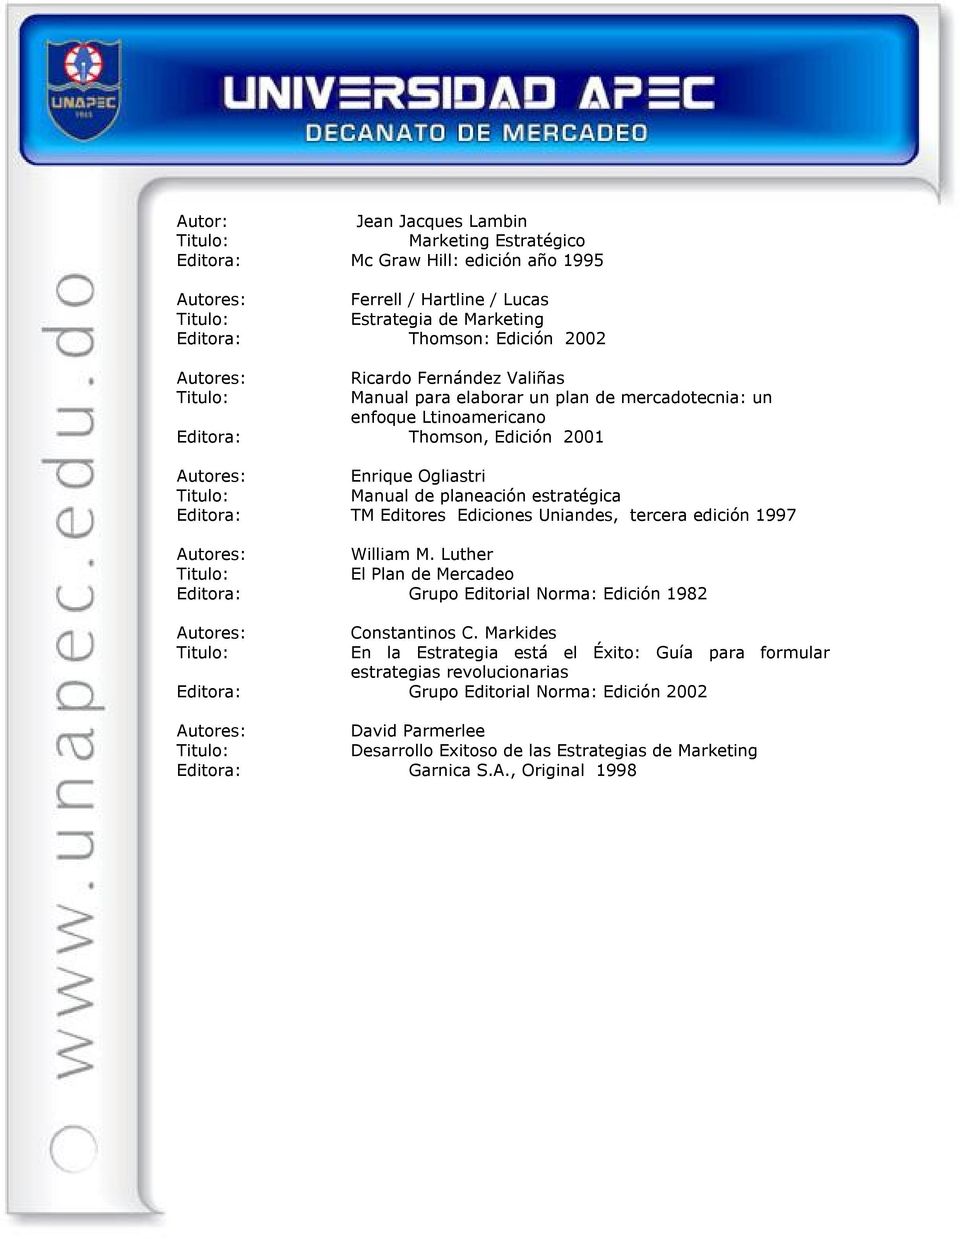 Editores Ediciones Uniandes, tercera edición 1997 Autores: William M. Luther El Plan de Mercadeo Editora: Grupo Editorial Norma: Edición 1982 Autores: Constantinos C.